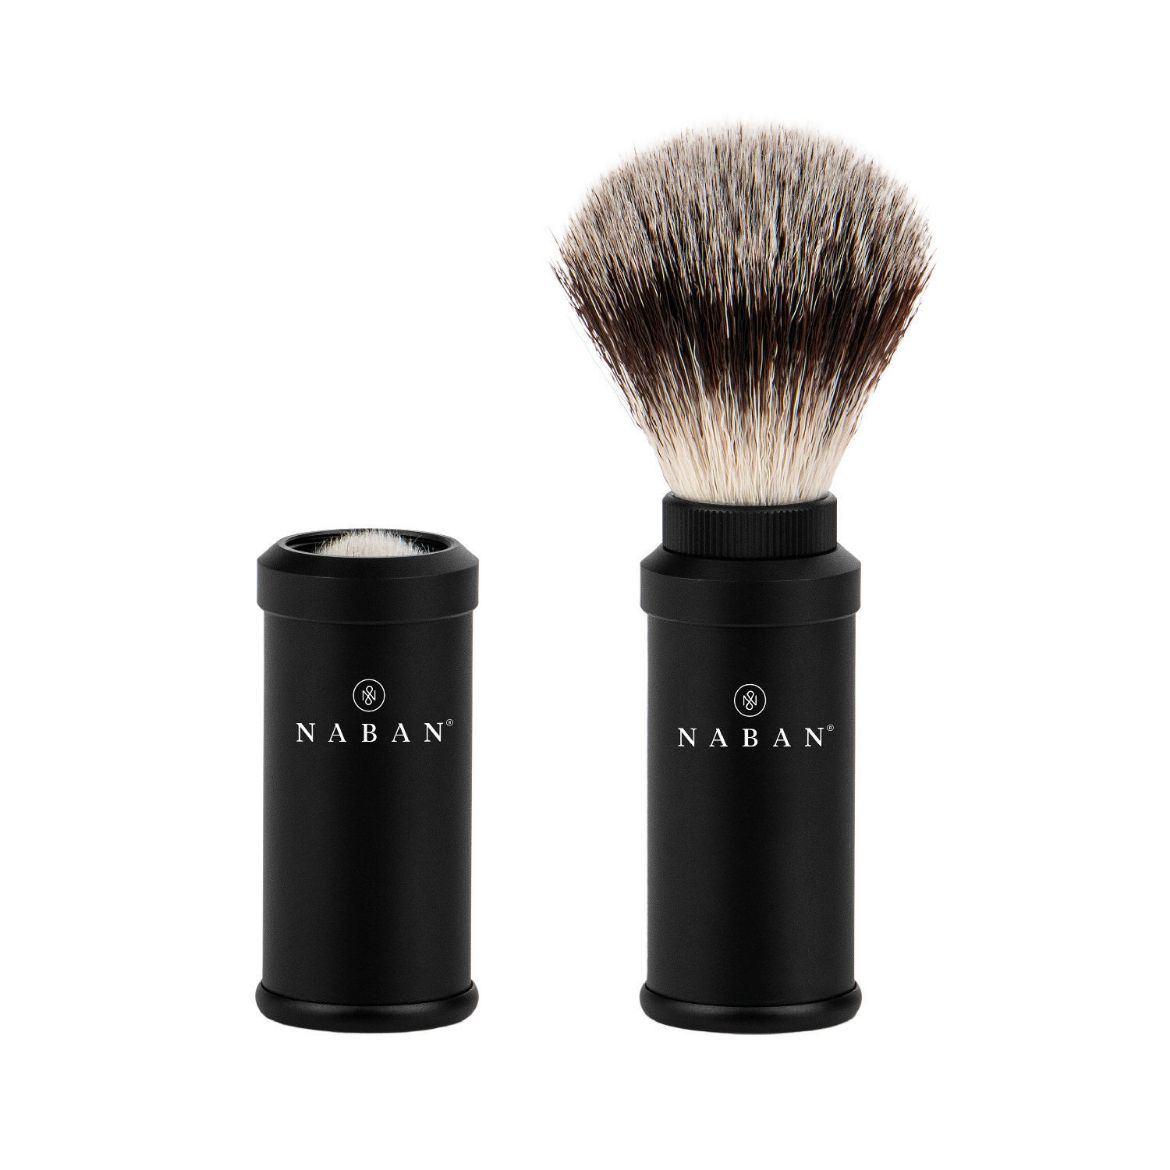 Image of NABAN shaving brush